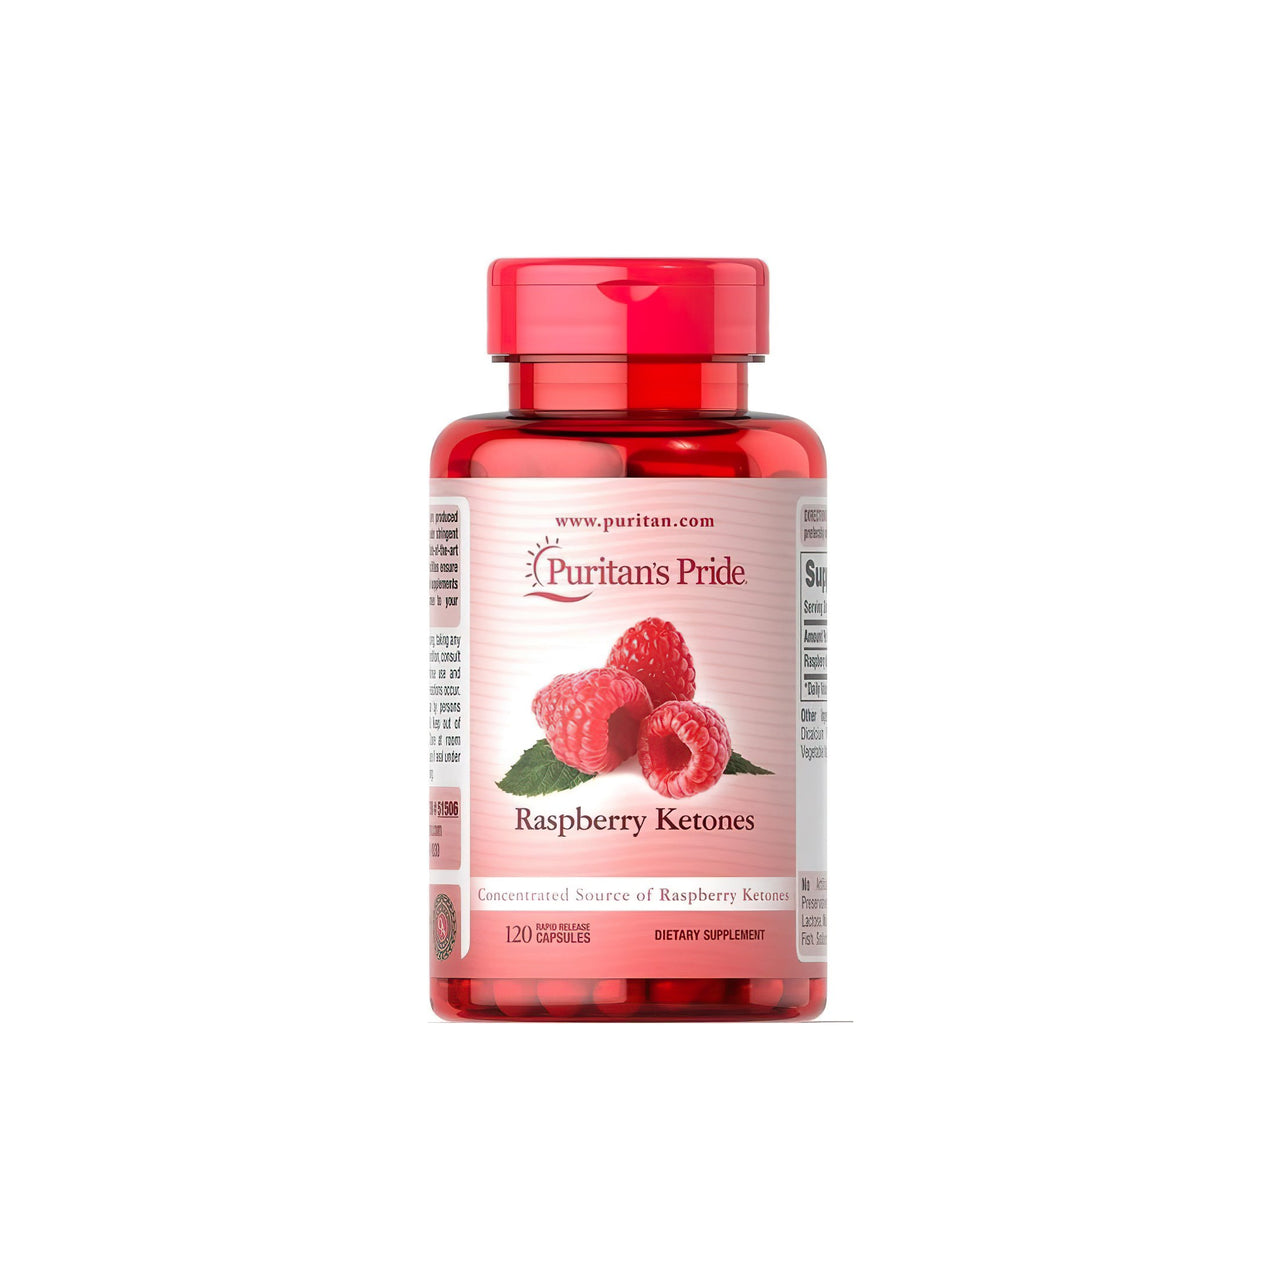 Un flacone di Raspberry Ketones ricco di antiossidanti da 100 mg 120 capsule Rapid Realase del marchio Puritan's Pride.